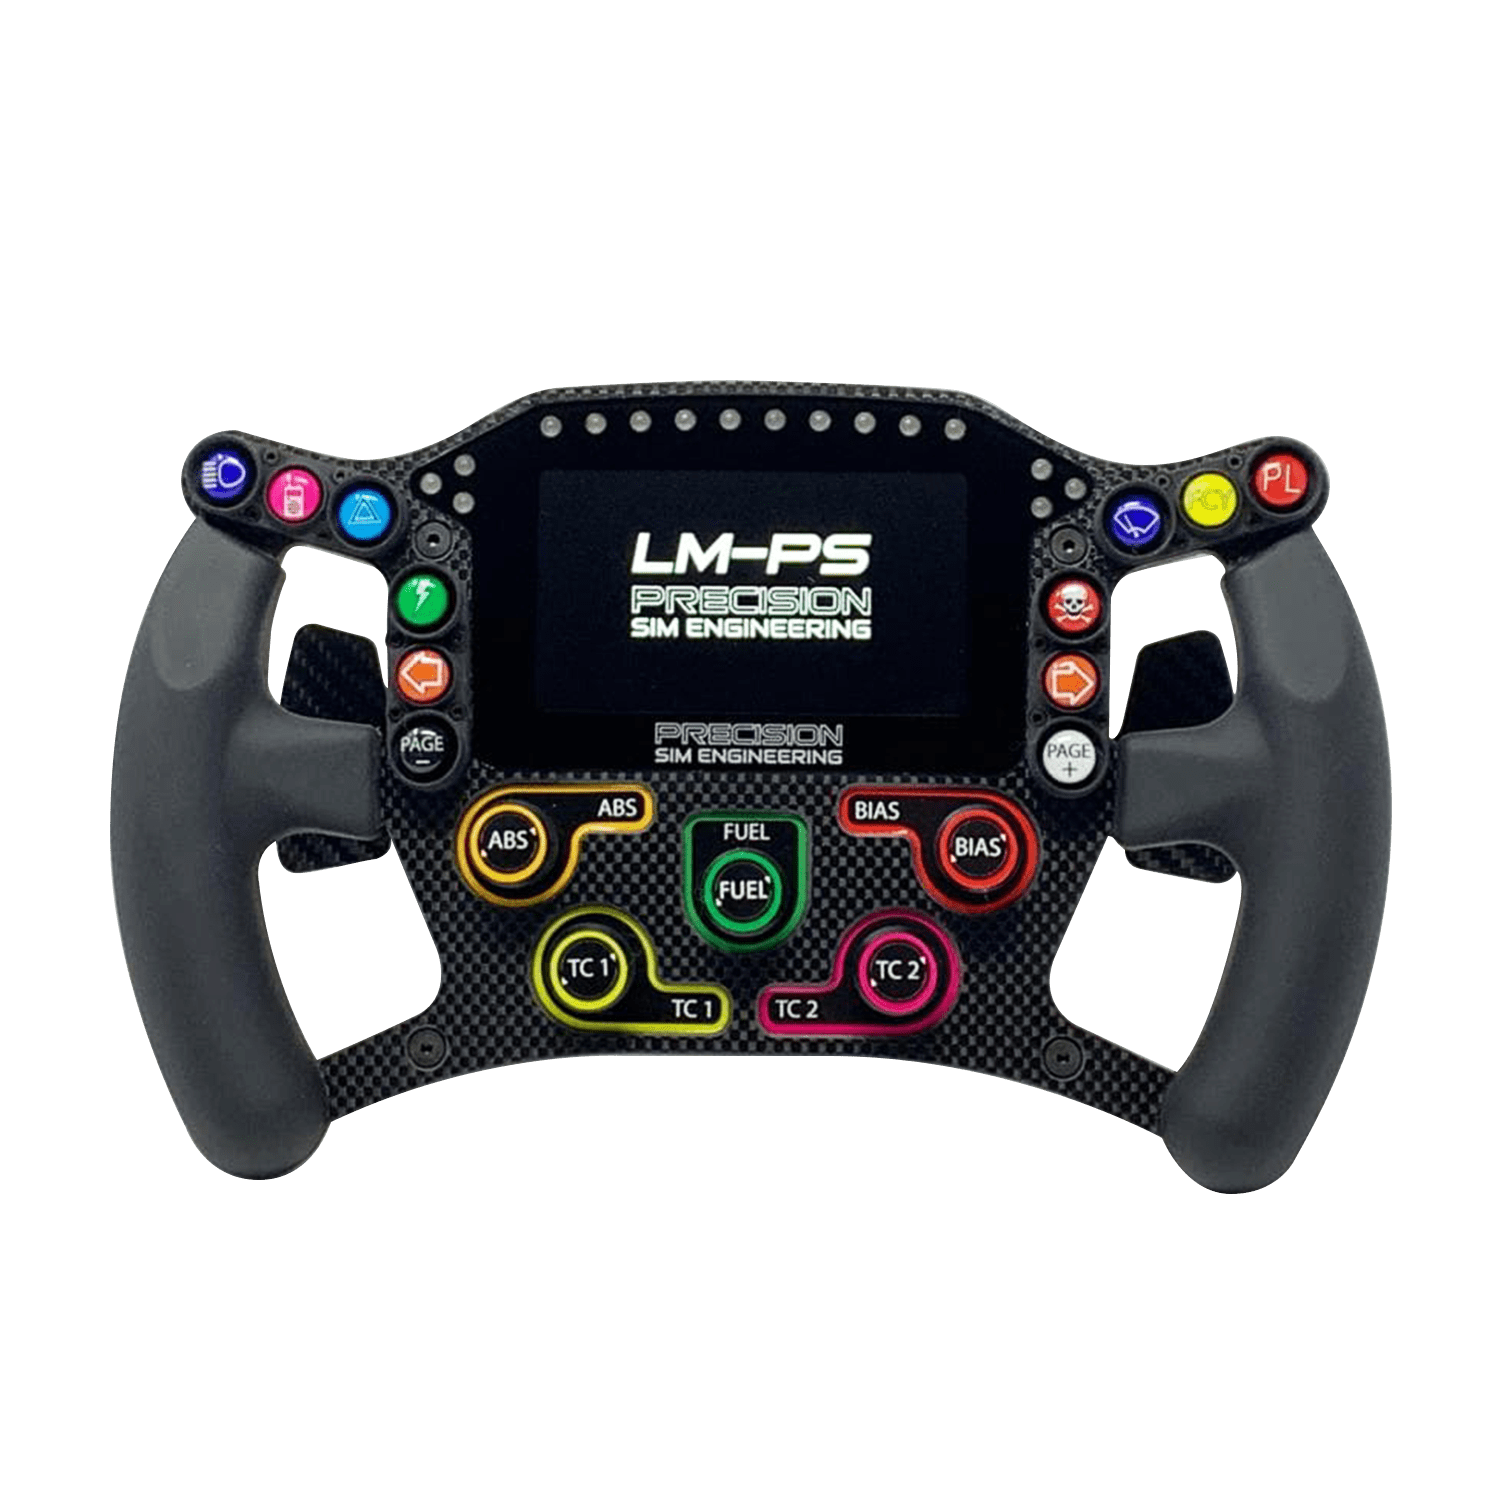 LM-PS steering wheel